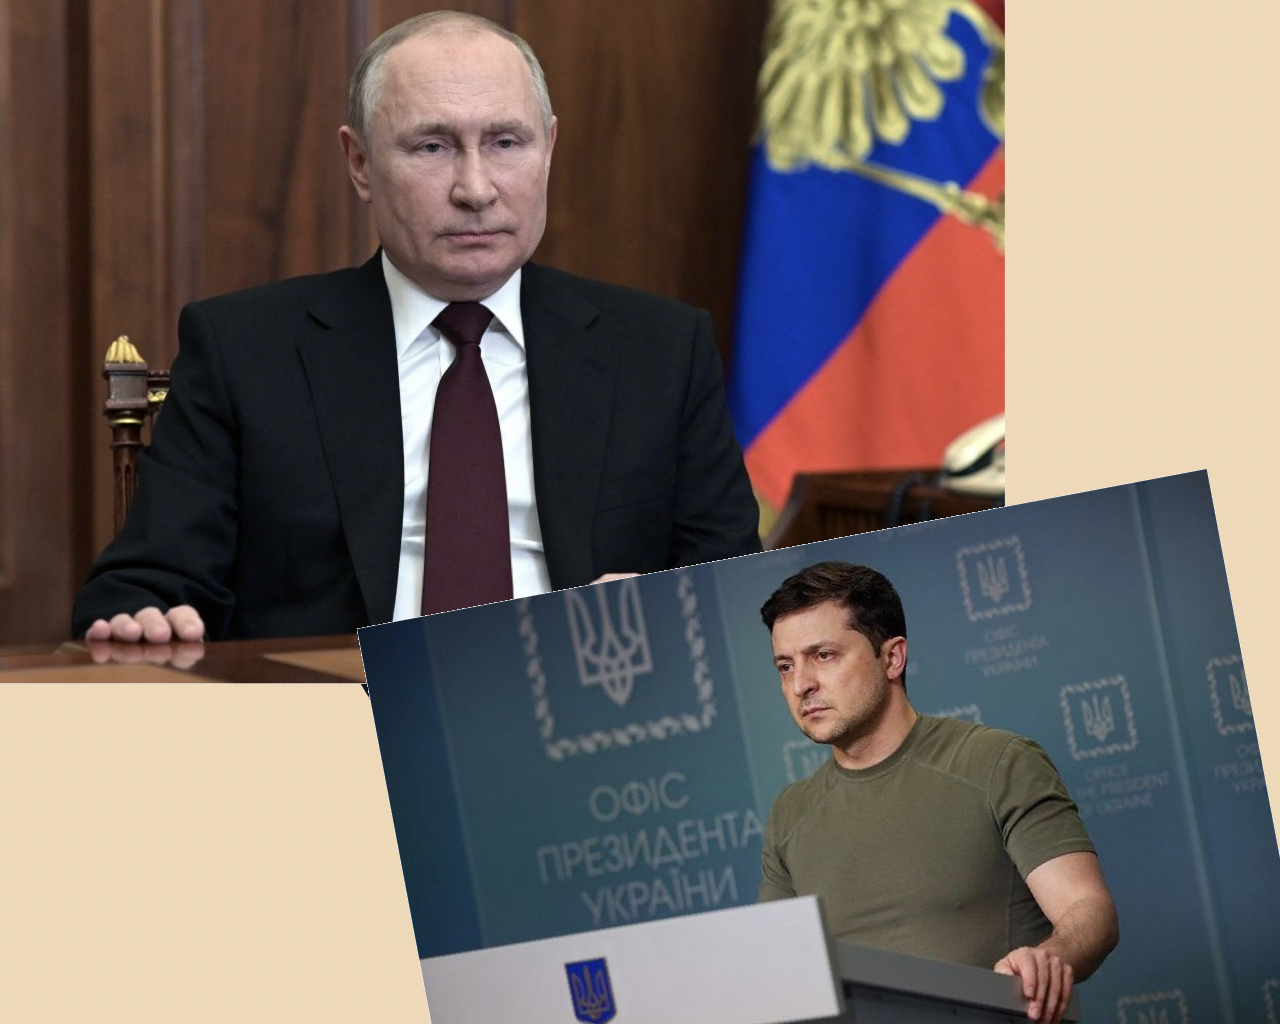 Su diva e donna un articolo per capire Putin e Zelensky ( e il nostro futuro)